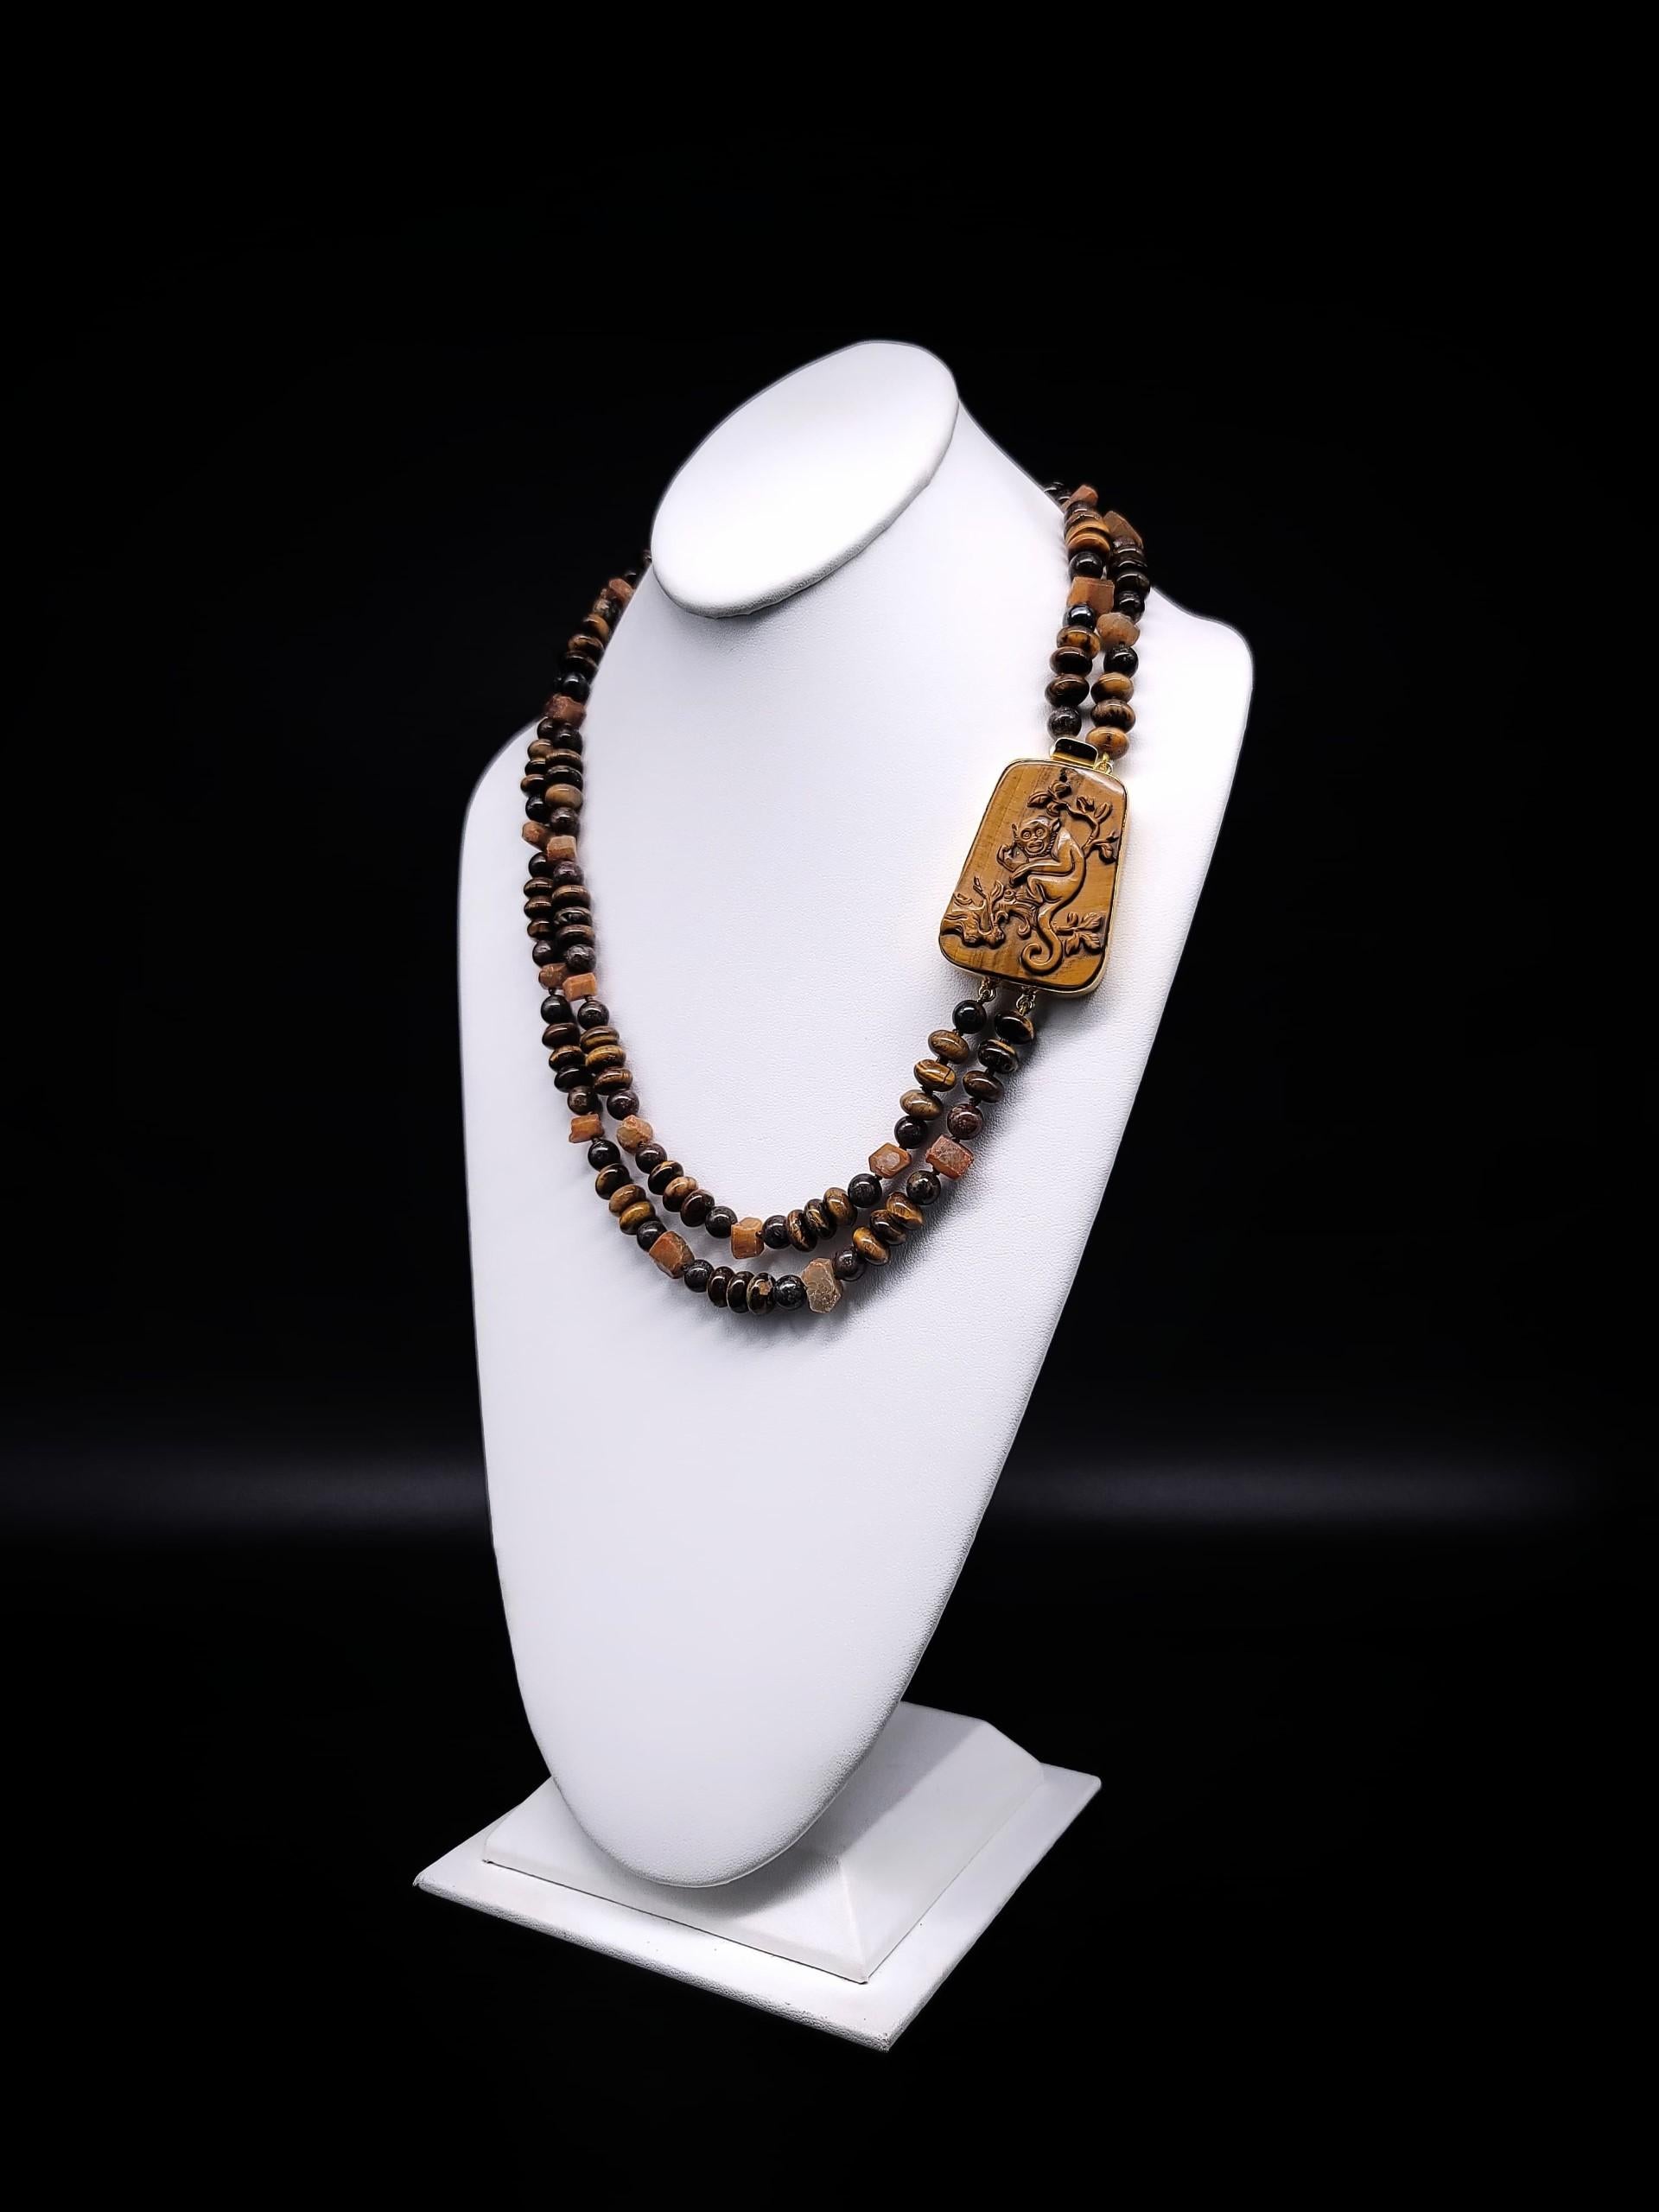 Élevez votre style avec ce collier à deux brins unique en son genre, qui présente un mélange harmonieux d'œil de tigre et de saphirs jaunes exquis de Madagascar. Cette pièce se distingue non seulement par ses magnifiques pierres précieuses, mais